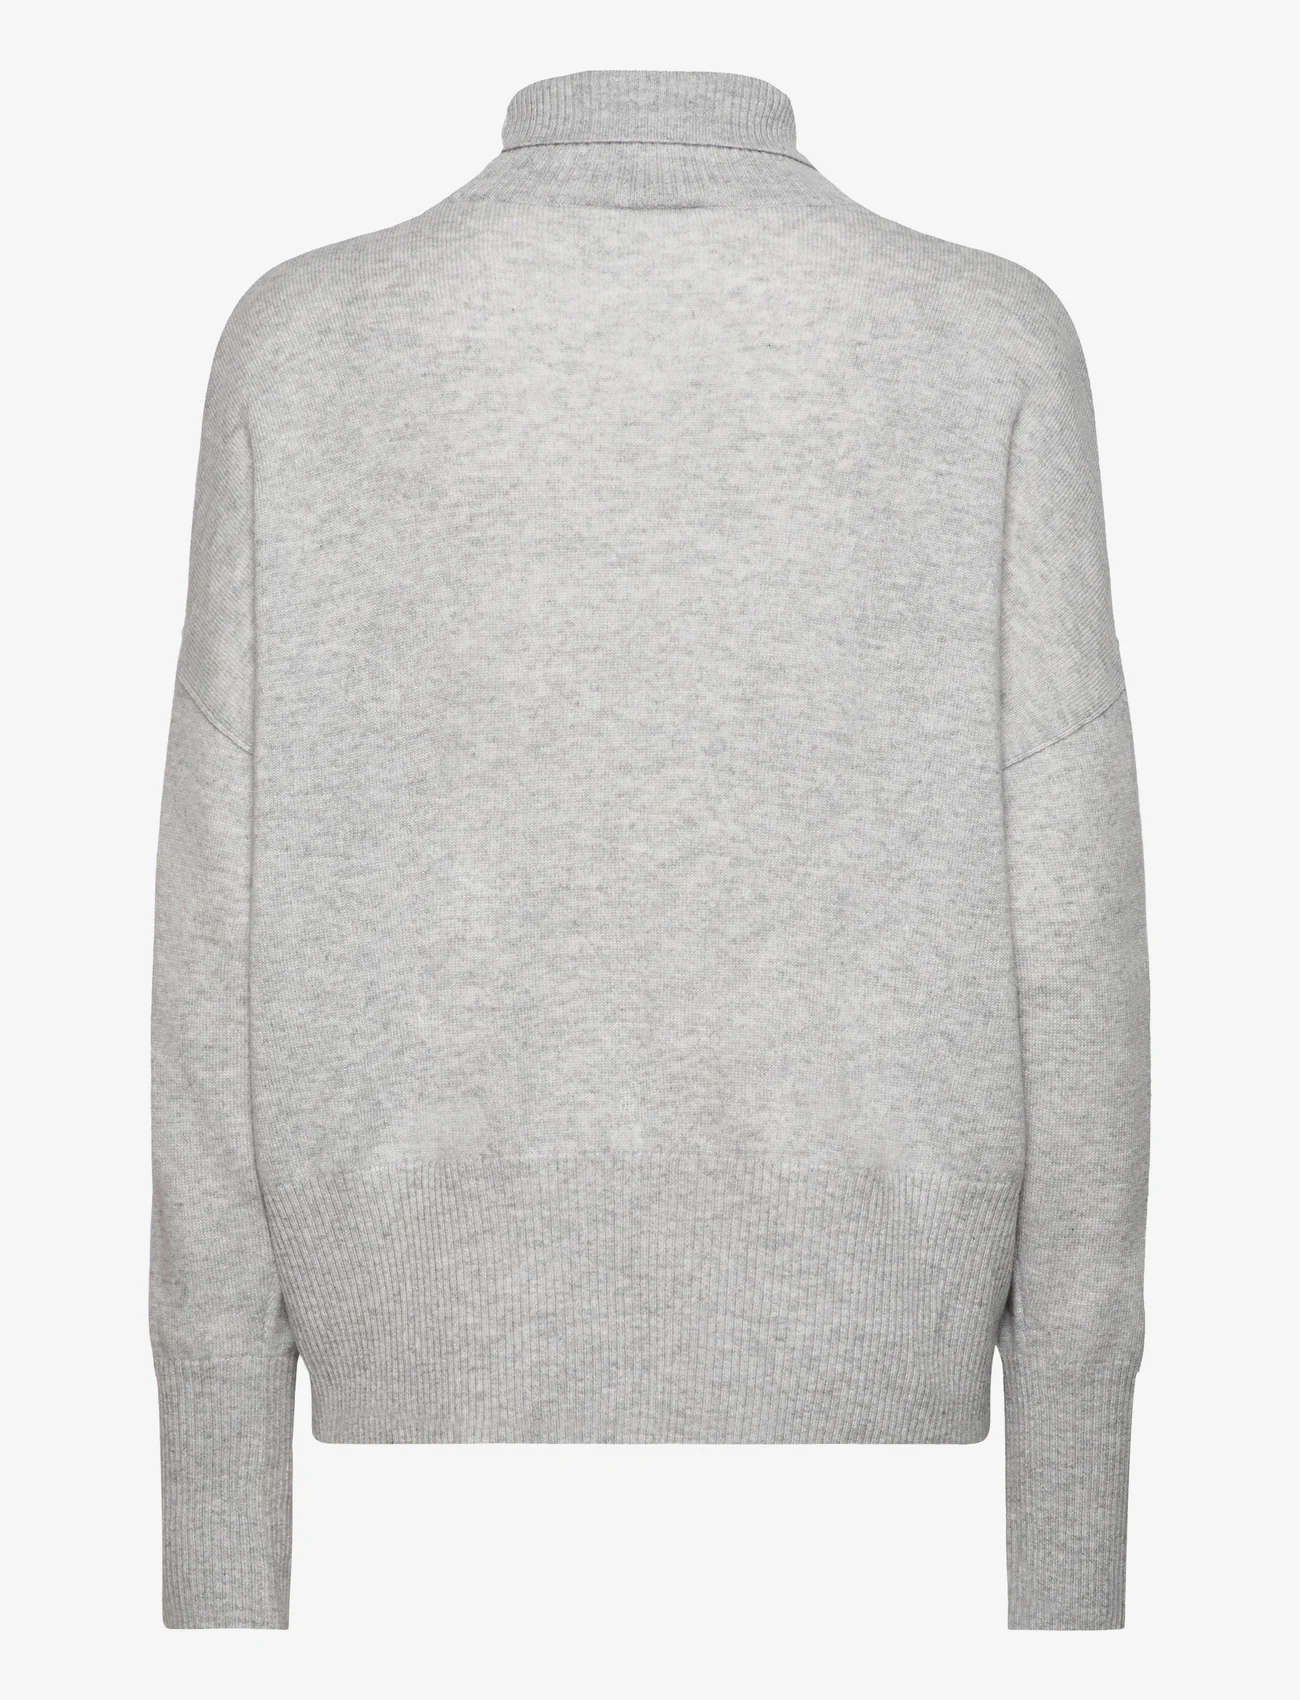 Balmuir - Mirjam cashmere sweater - rollkragenpullover - soft melange grey - 1